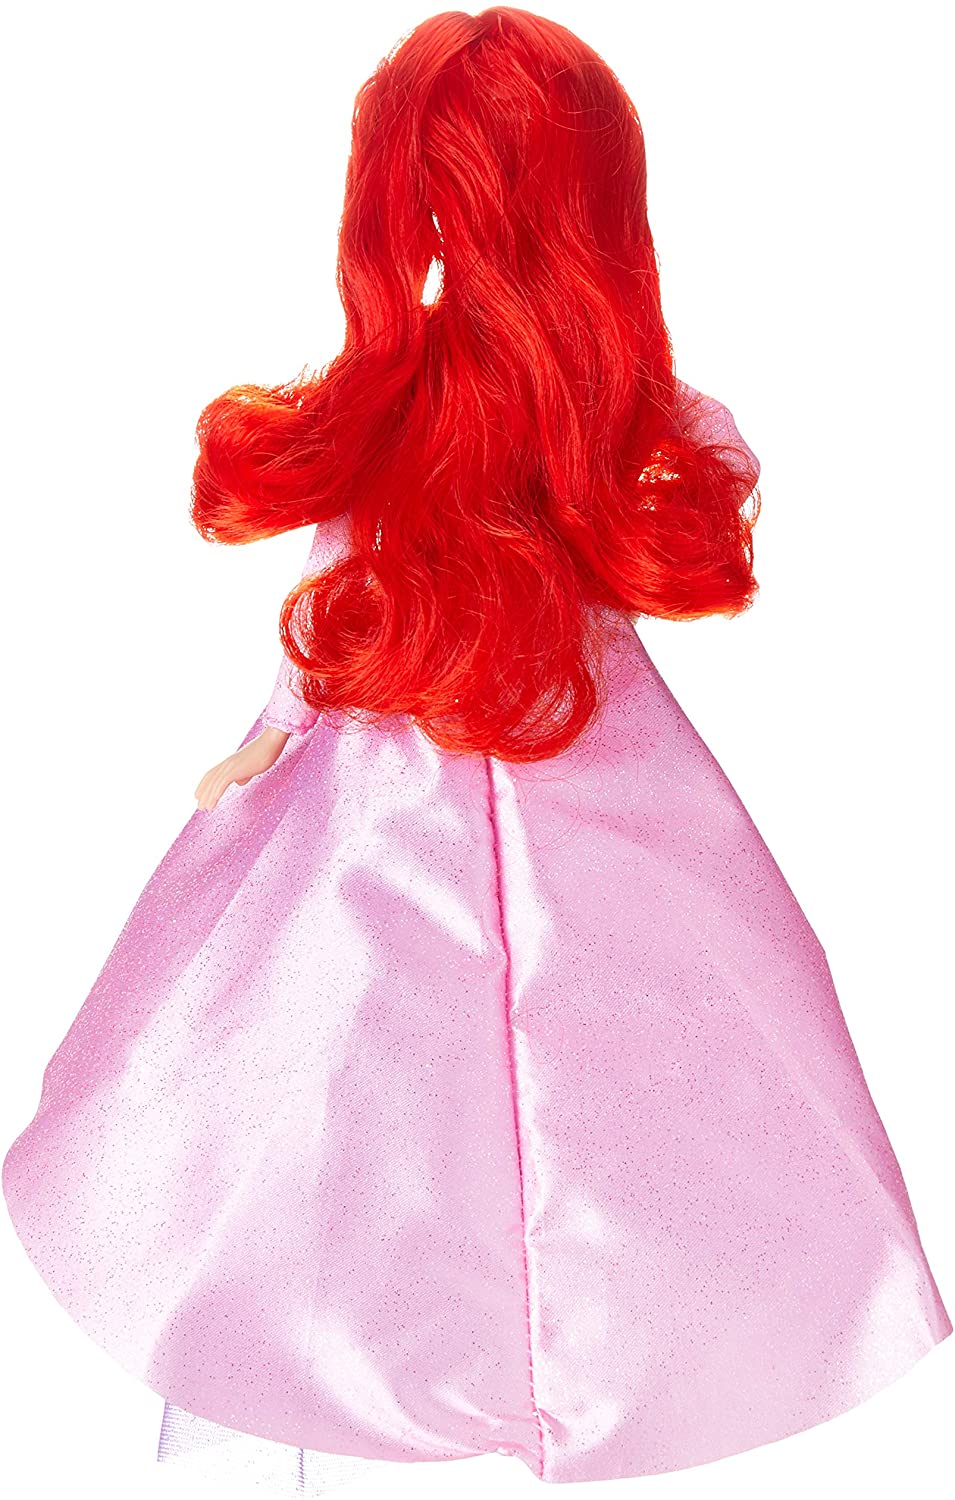 Hasbro Disney Princess Style Series Ariel 2